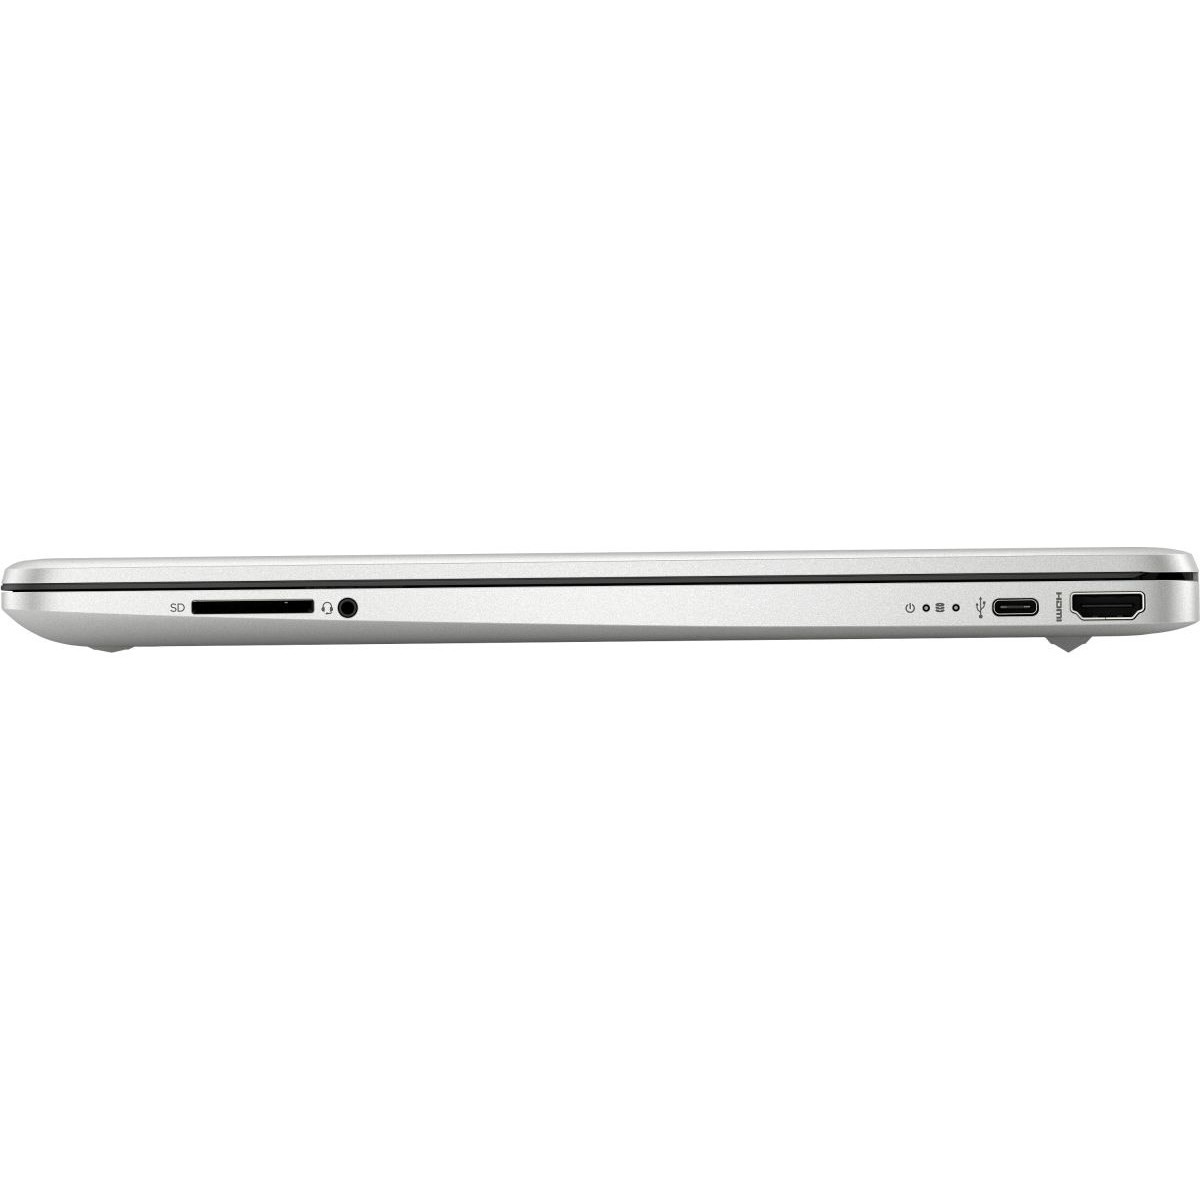 Ноутбук Hp 15s Eq1352ur 475q4ea Цена